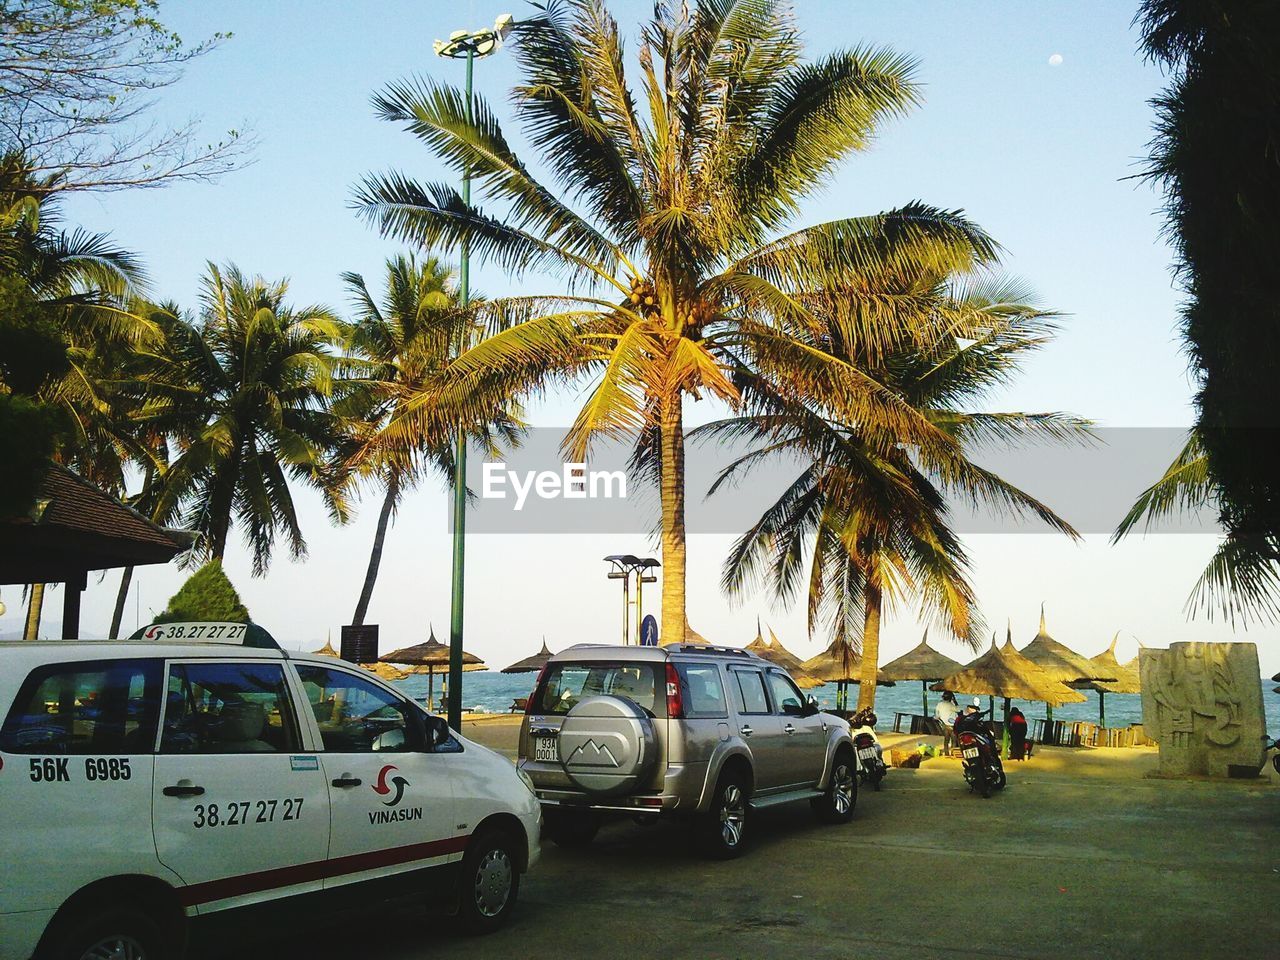 Cars on beach against palm trees